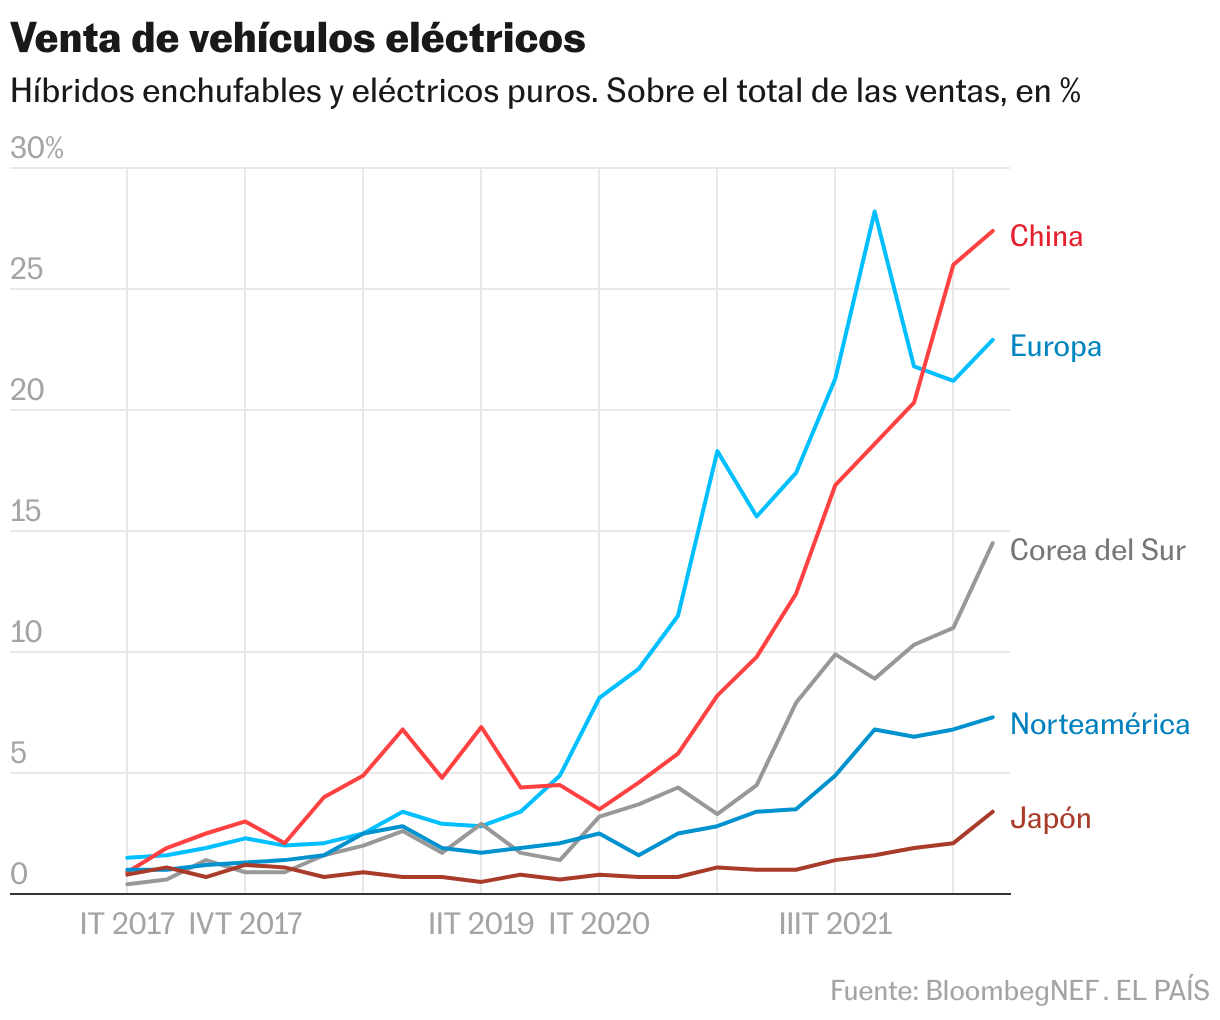 Venta de vehículos eléctricos por países y regiones. Hídridos enchufables y eléctricos puros. En porcentaje del total